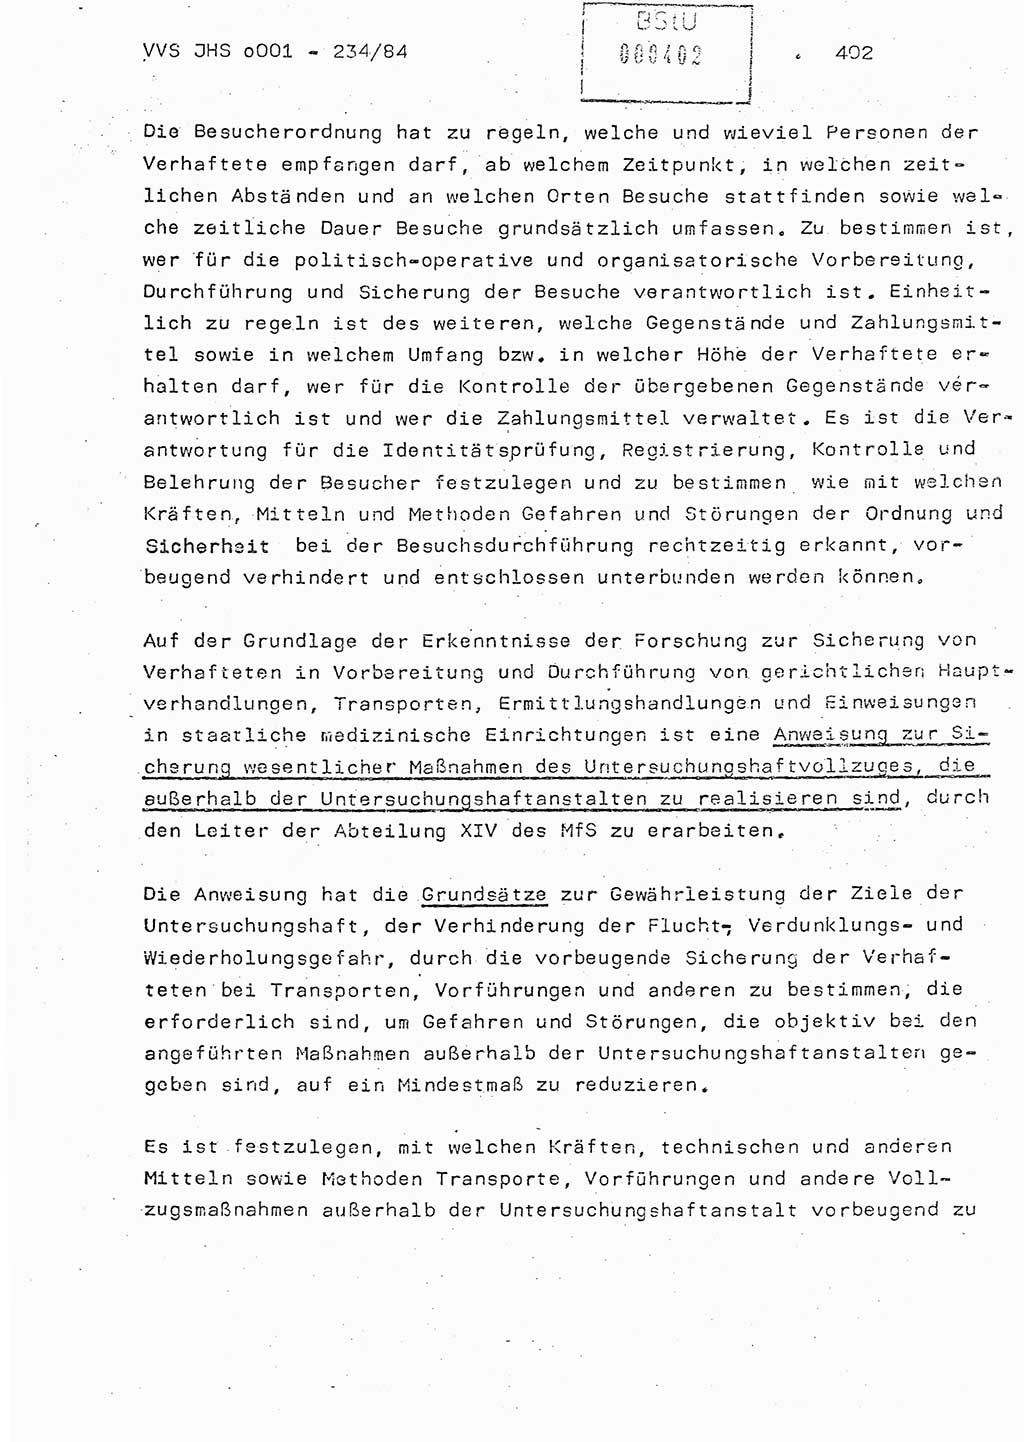 Dissertation Oberst Siegfried Rataizick (Abt. ⅩⅣ), Oberstleutnant Volkmar Heinz (Abt. ⅩⅣ), Oberstleutnant Werner Stein (HA Ⅸ), Hauptmann Heinz Conrad (JHS), Ministerium für Staatssicherheit (MfS) [Deutsche Demokratische Republik (DDR)], Juristische Hochschule (JHS), Vertrauliche Verschlußsache (VVS) o001-234/84, Potsdam 1984, Seite 402 (Diss. MfS DDR JHS VVS o001-234/84 1984, S. 402)